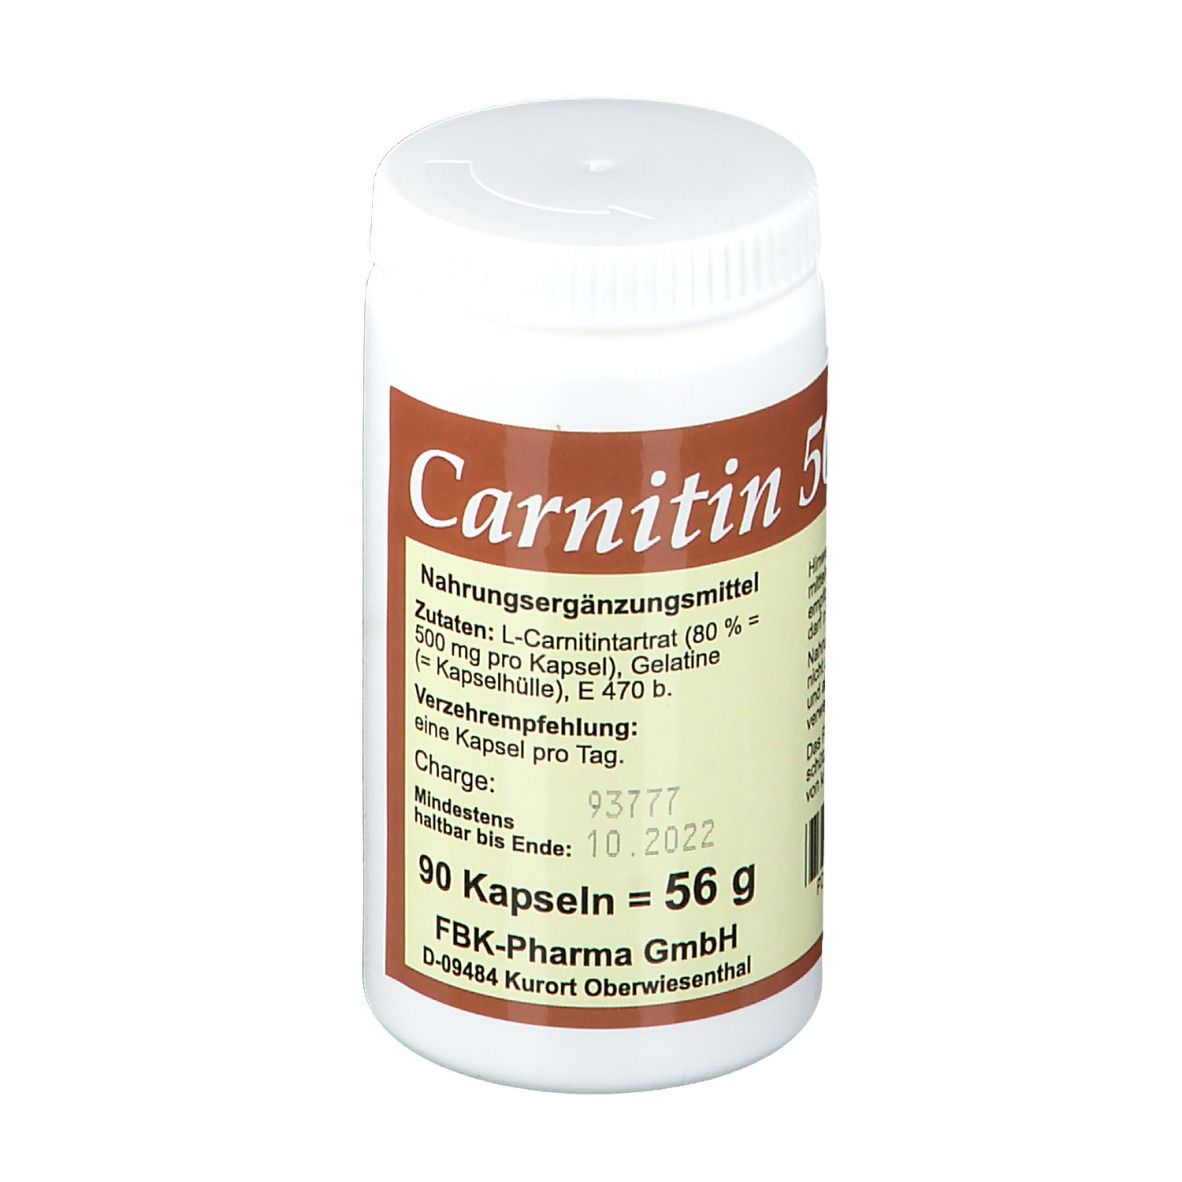 Carnitin 500